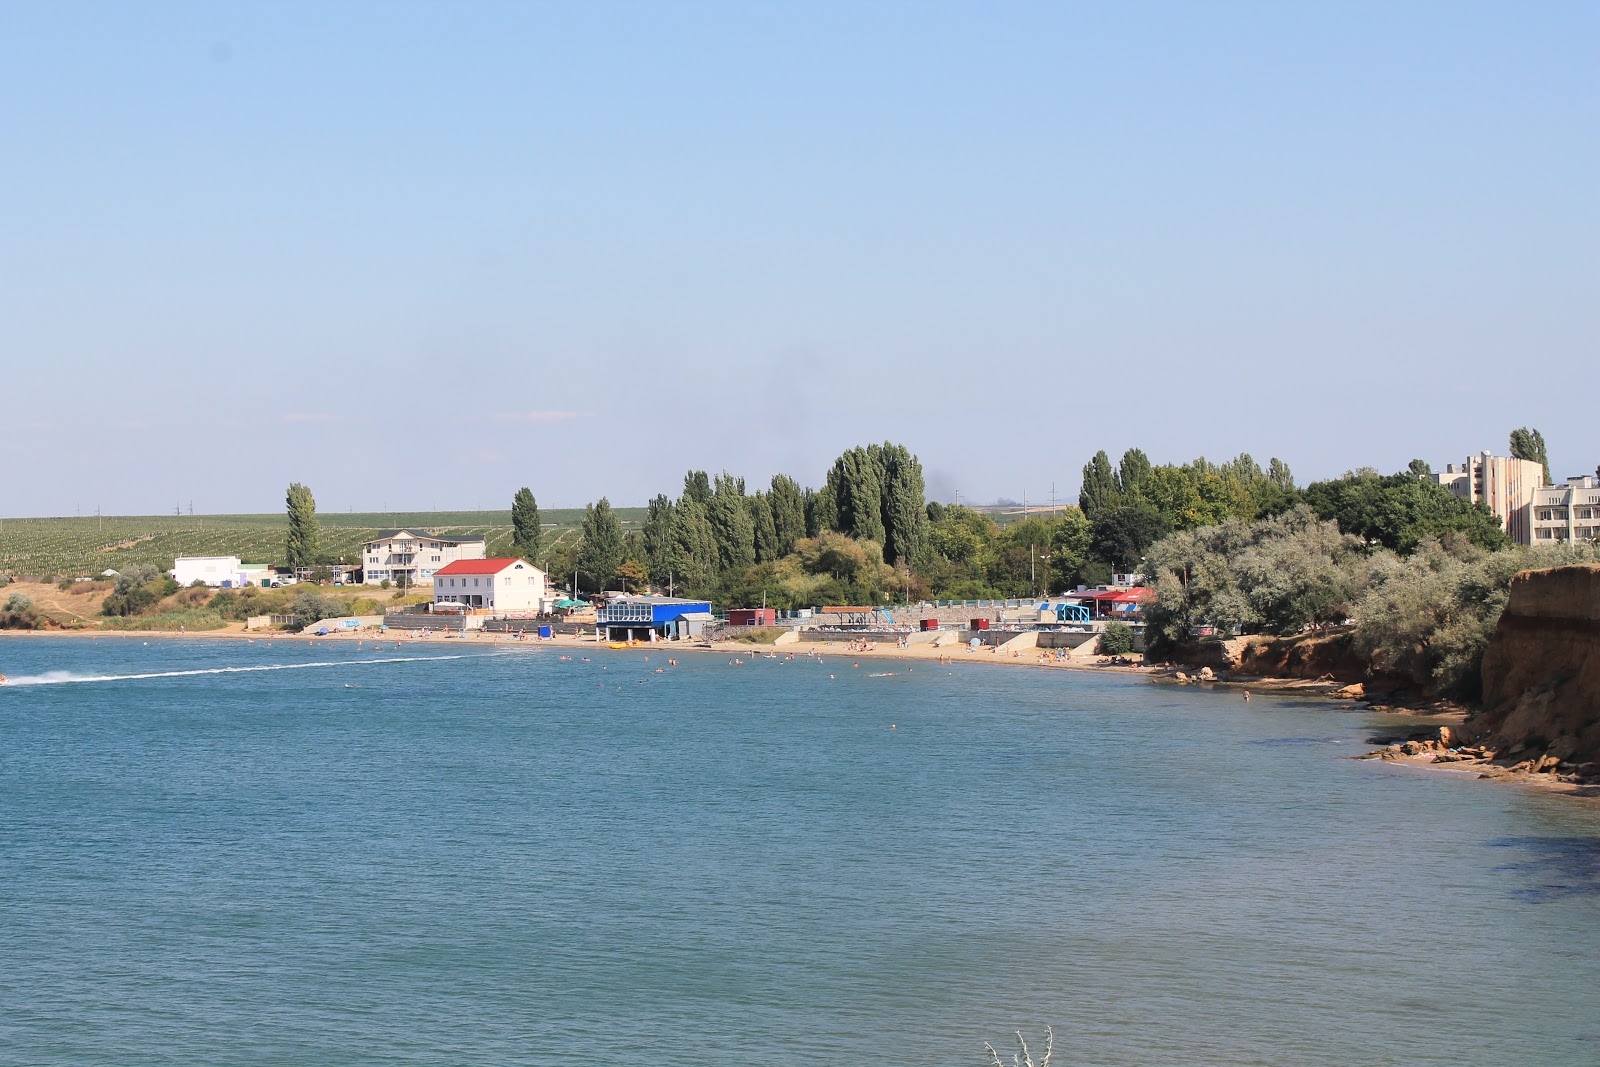 Uglovoe beach'in fotoğrafı geniş plaj ile birlikte